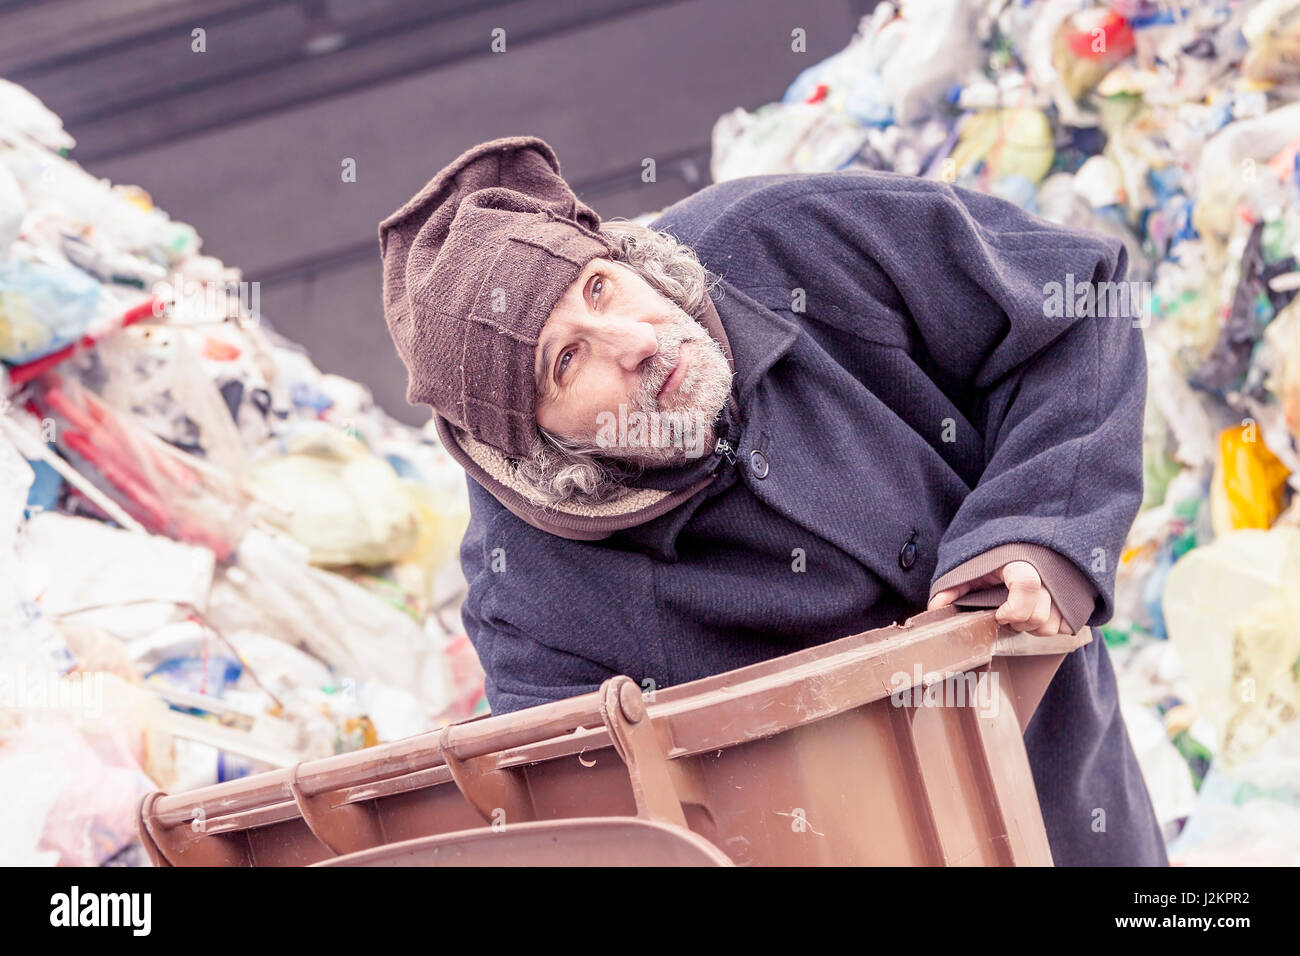 Les sans-abri fouille dans la poubelle de l'enfouissement Photo Stock -  Alamy